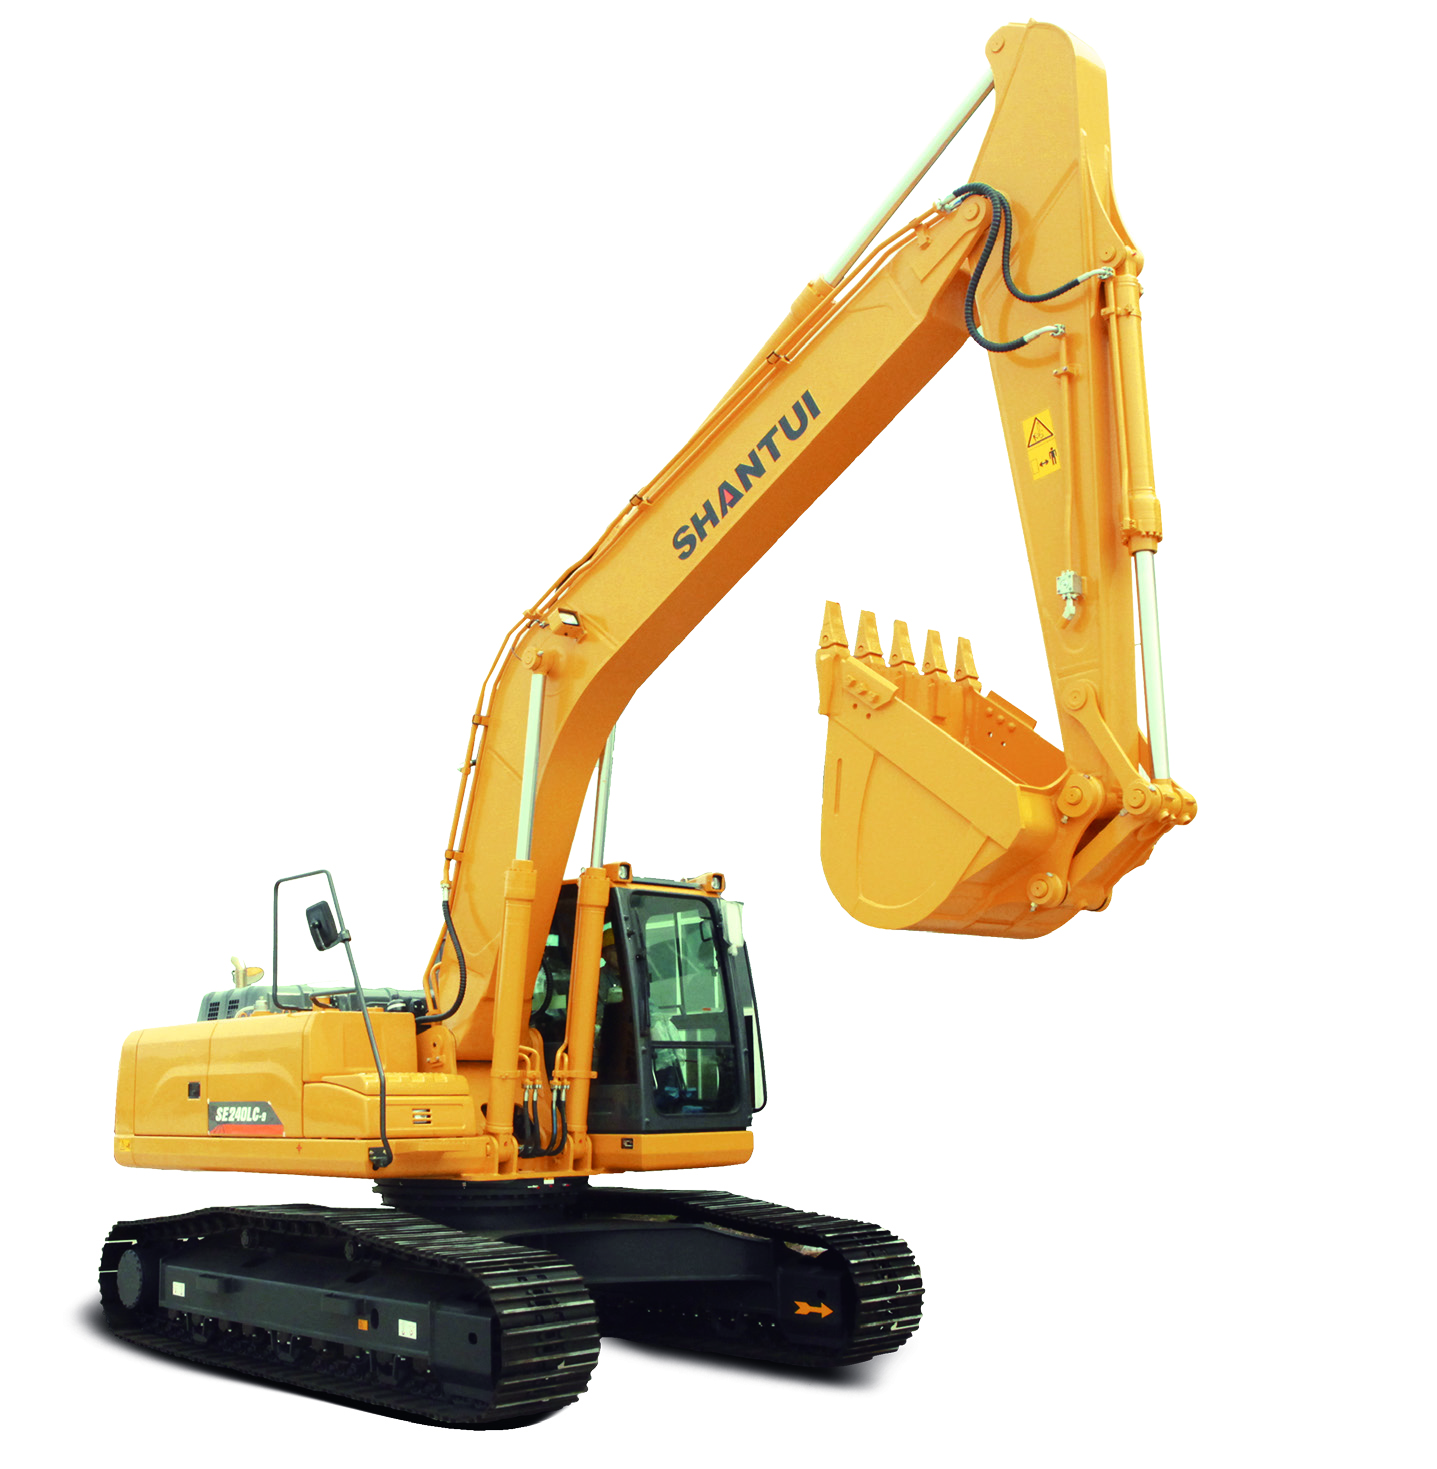 Shantui 24.8ton Medium-Sized Crawler Excavator